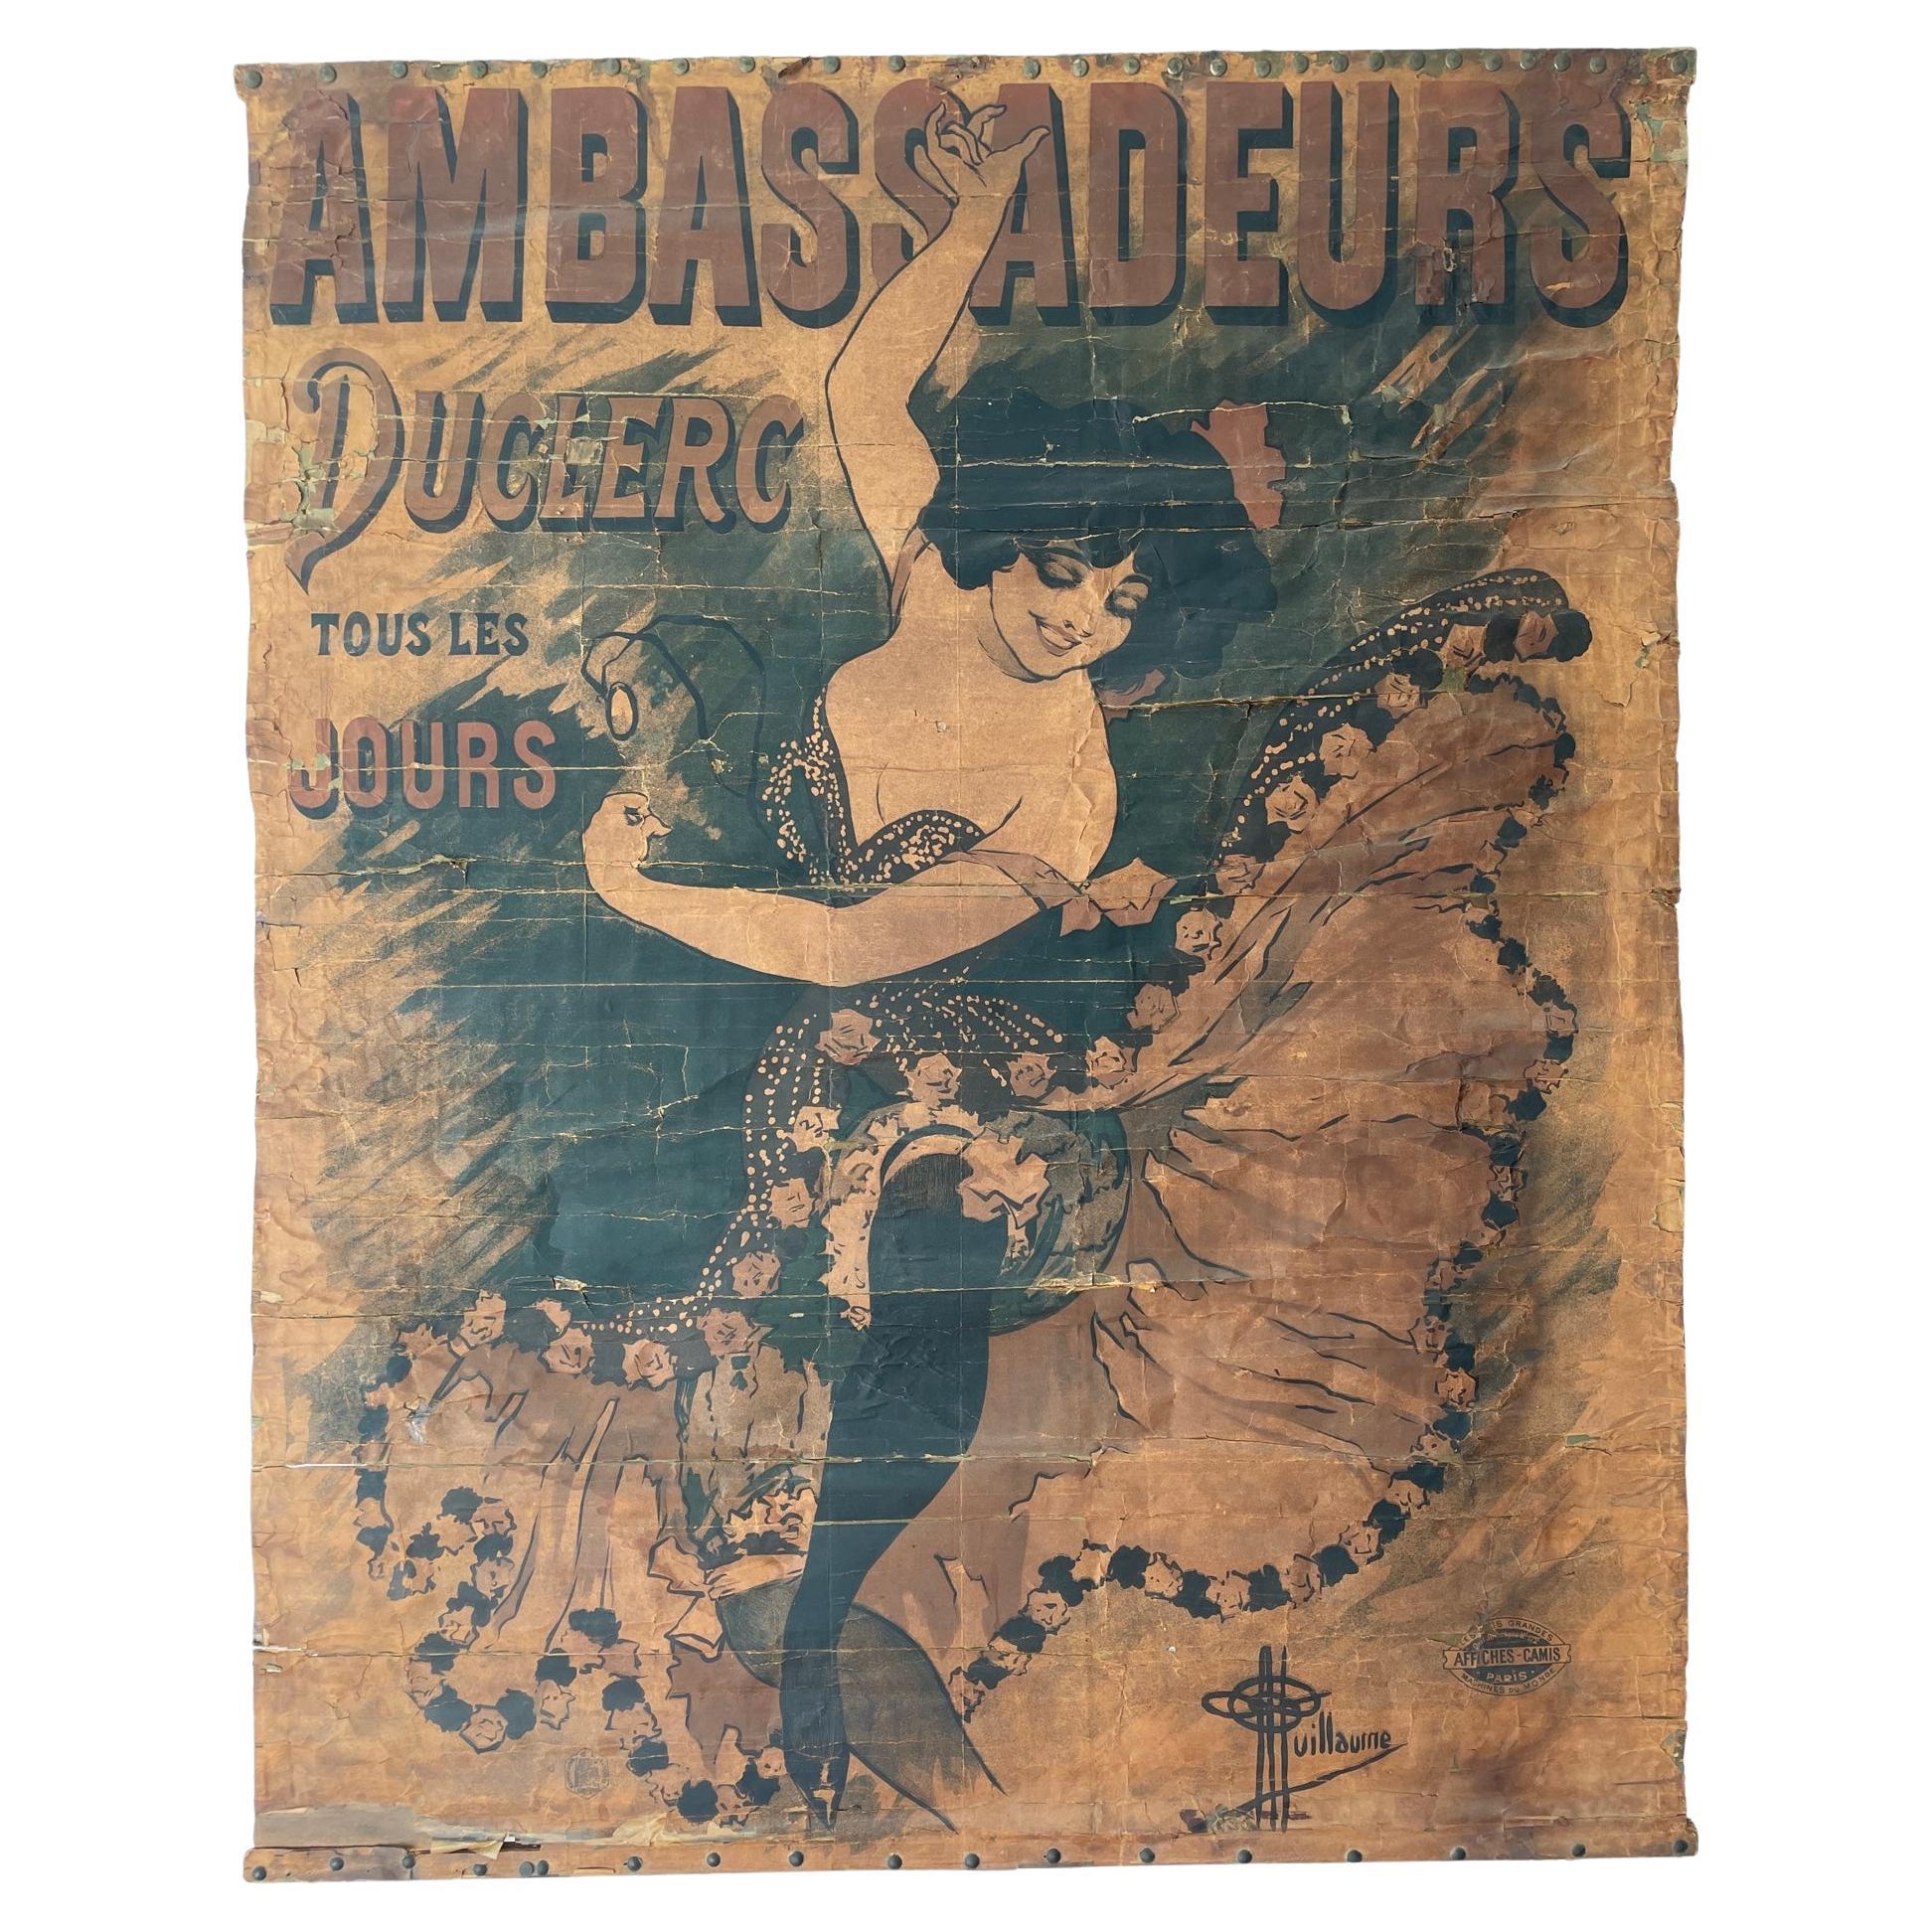 1894 Antique affiche / poster Ambassadeurs Duclerc tous les jours - Guillaume For Sale